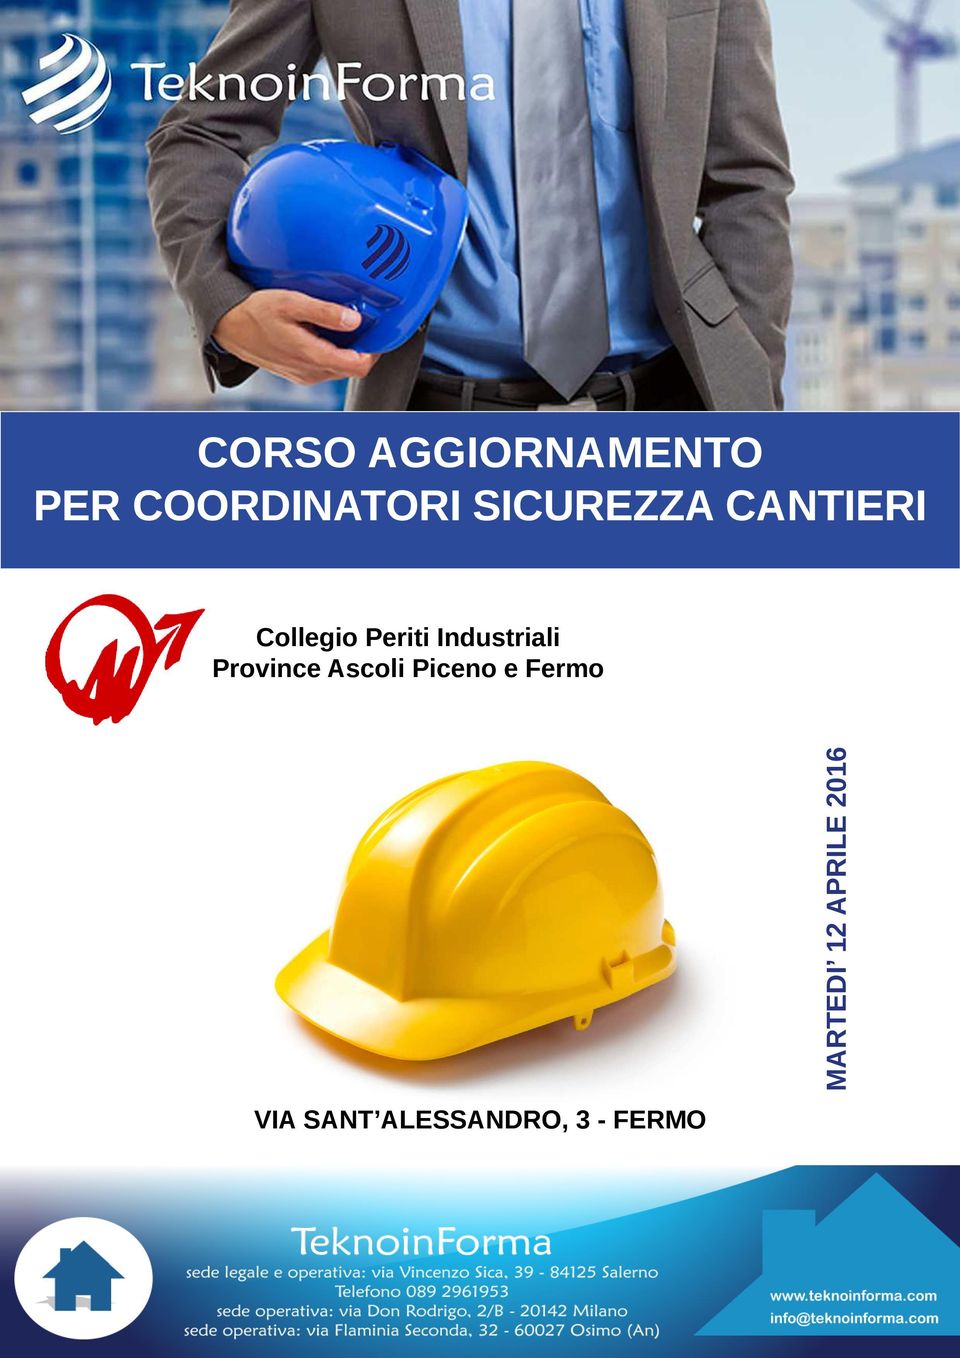 Industriali Province Ascoli Piceno e